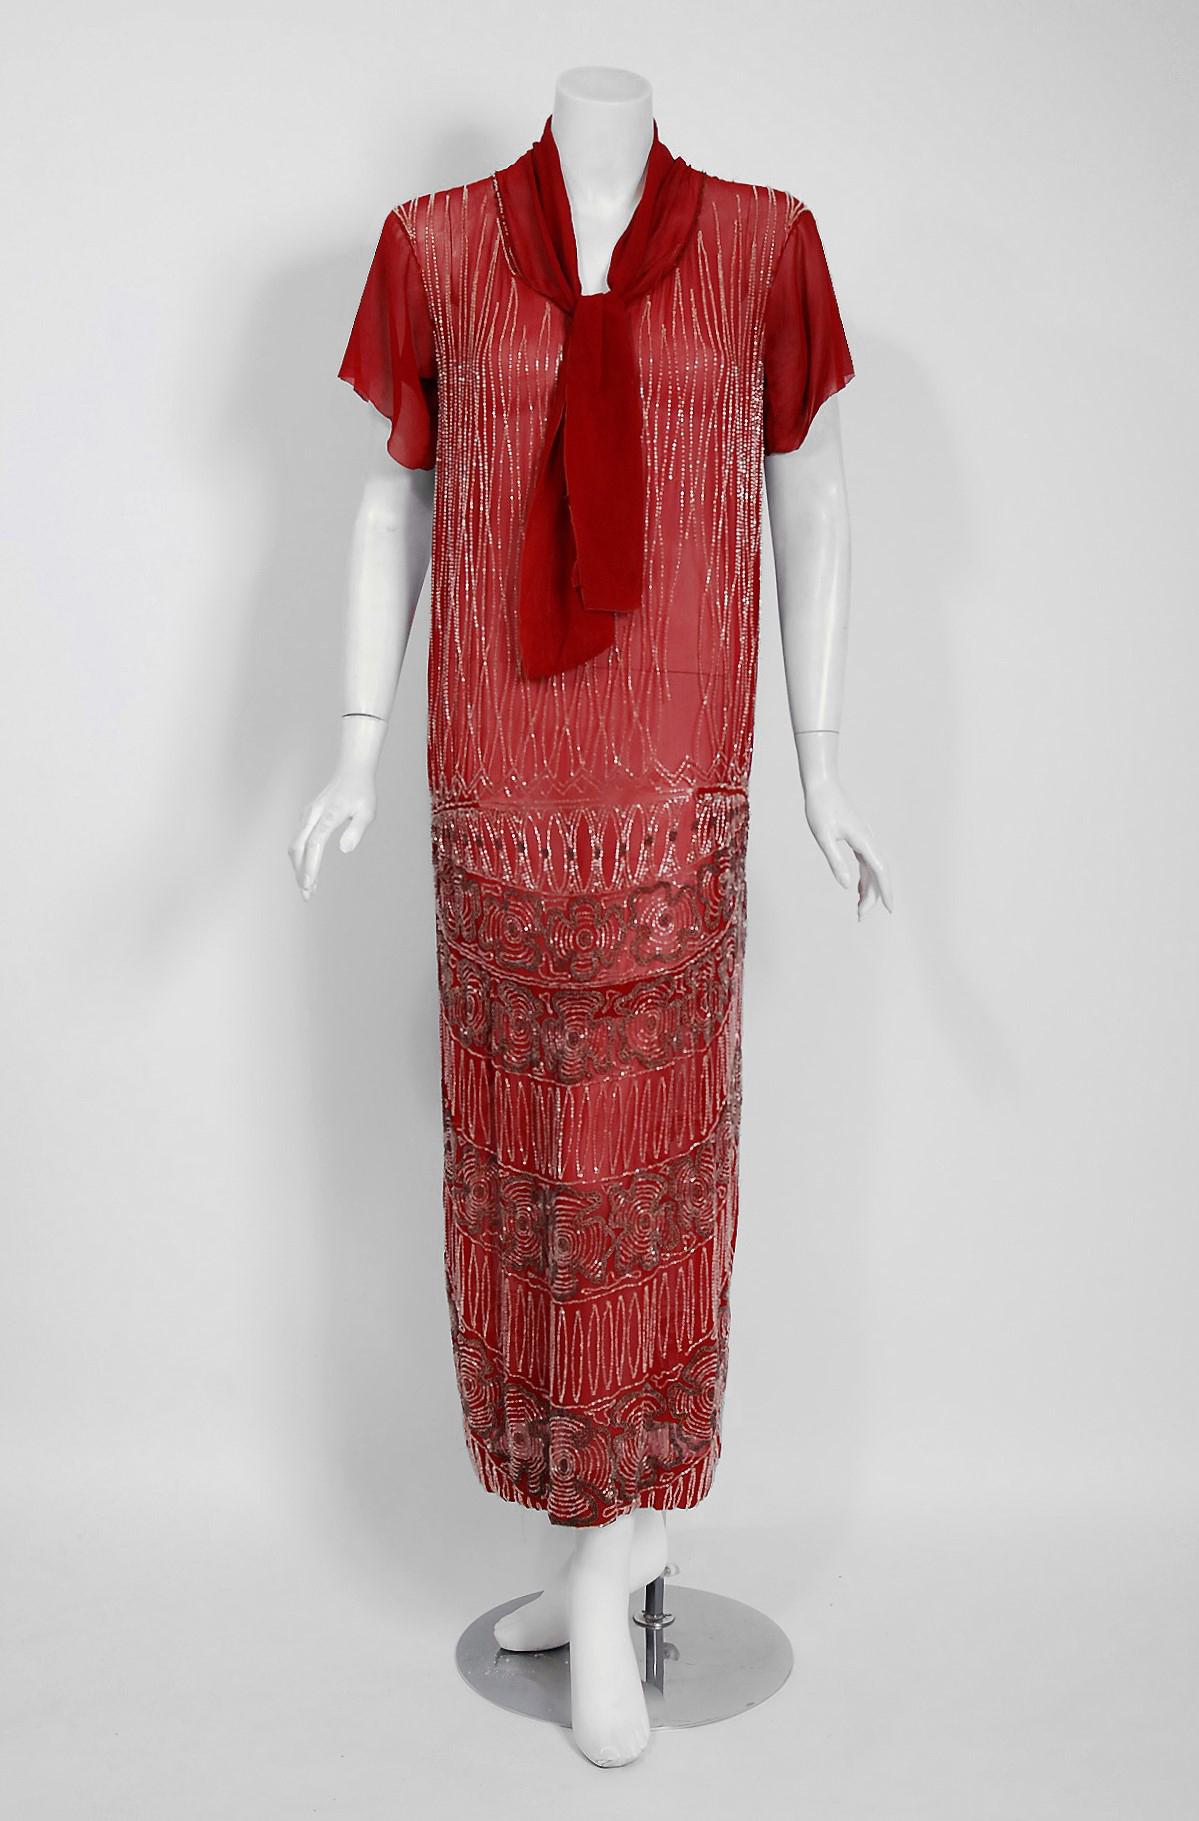 Les robes de claquettes vibrantes du début du 20e siècle sont des favoris éternels et celle-ci est un véritable coup de foudre ! Le style simple et déstructuré de ce vêtement est très moderne ; le perlage floral de style déco est un trésor de l'art